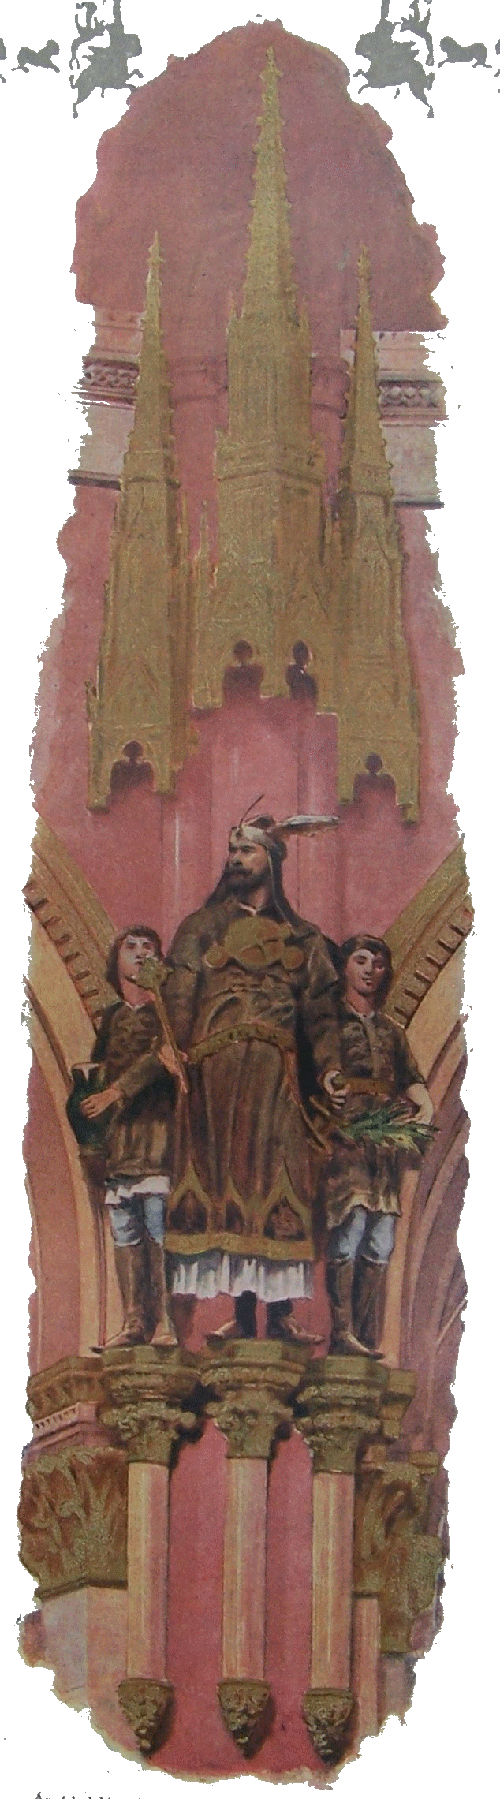 Árpád nagyfejedelem a két ifjúval az Országház kupolatermében (Szécsi Antal szobra)